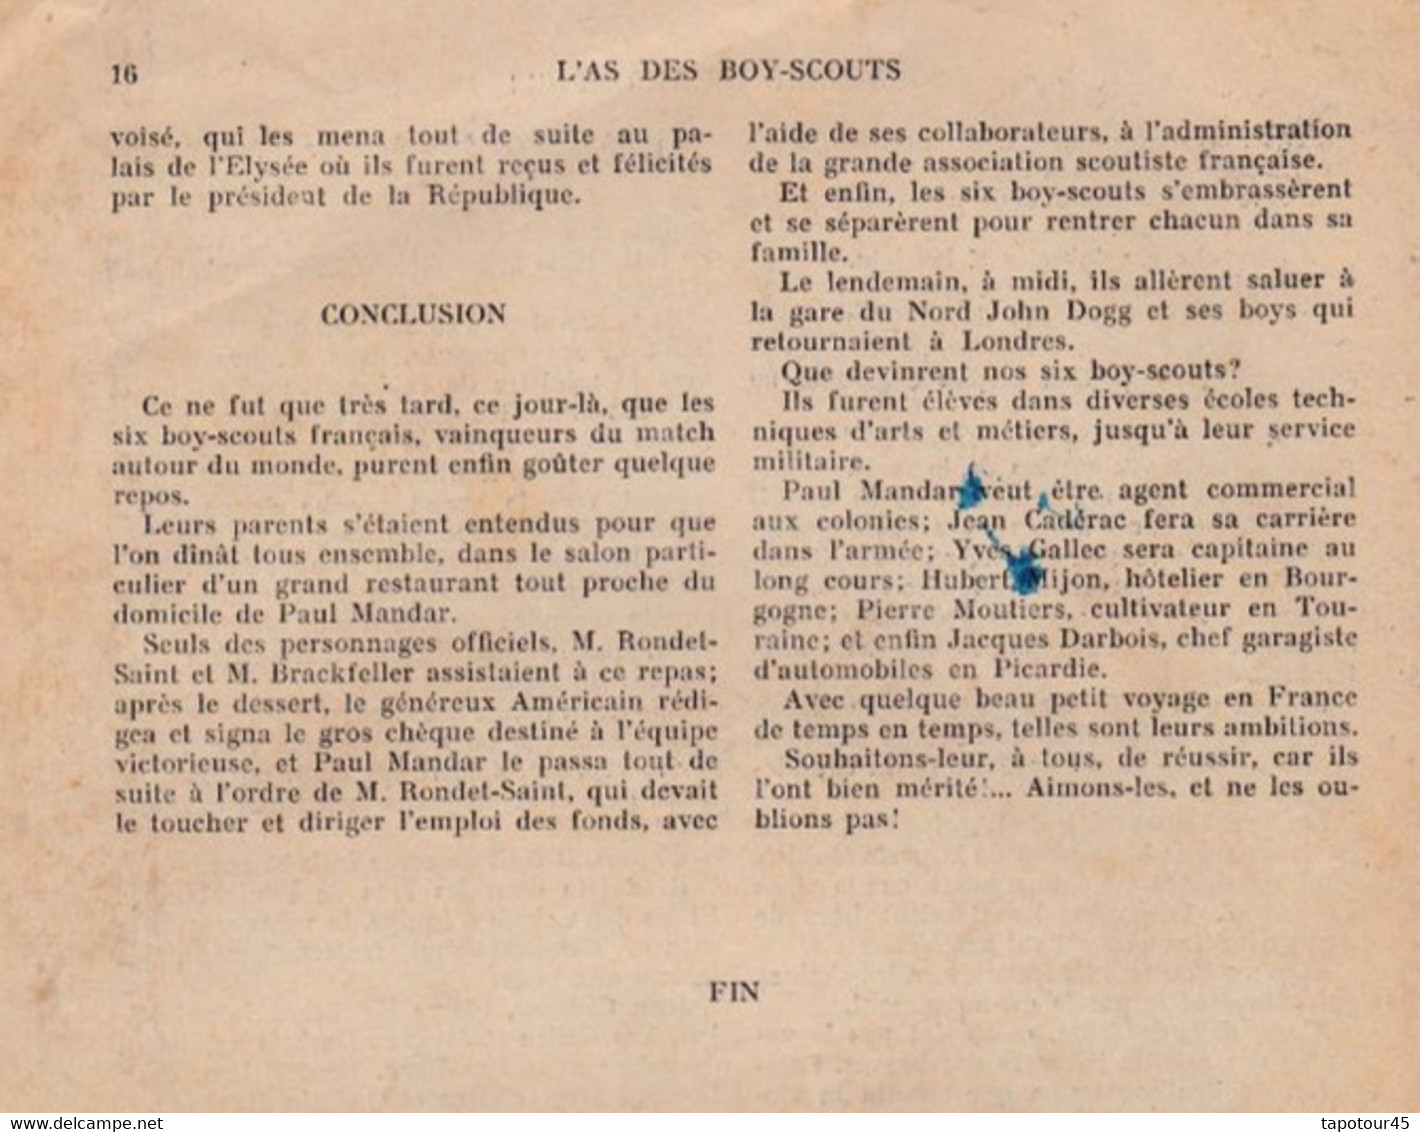 T V 12 ) lot de 51 hebdos de 1932/33 "l'As des Boy Scouts" A4 16 pages du N=2 au N= 52 /Manque le N=1